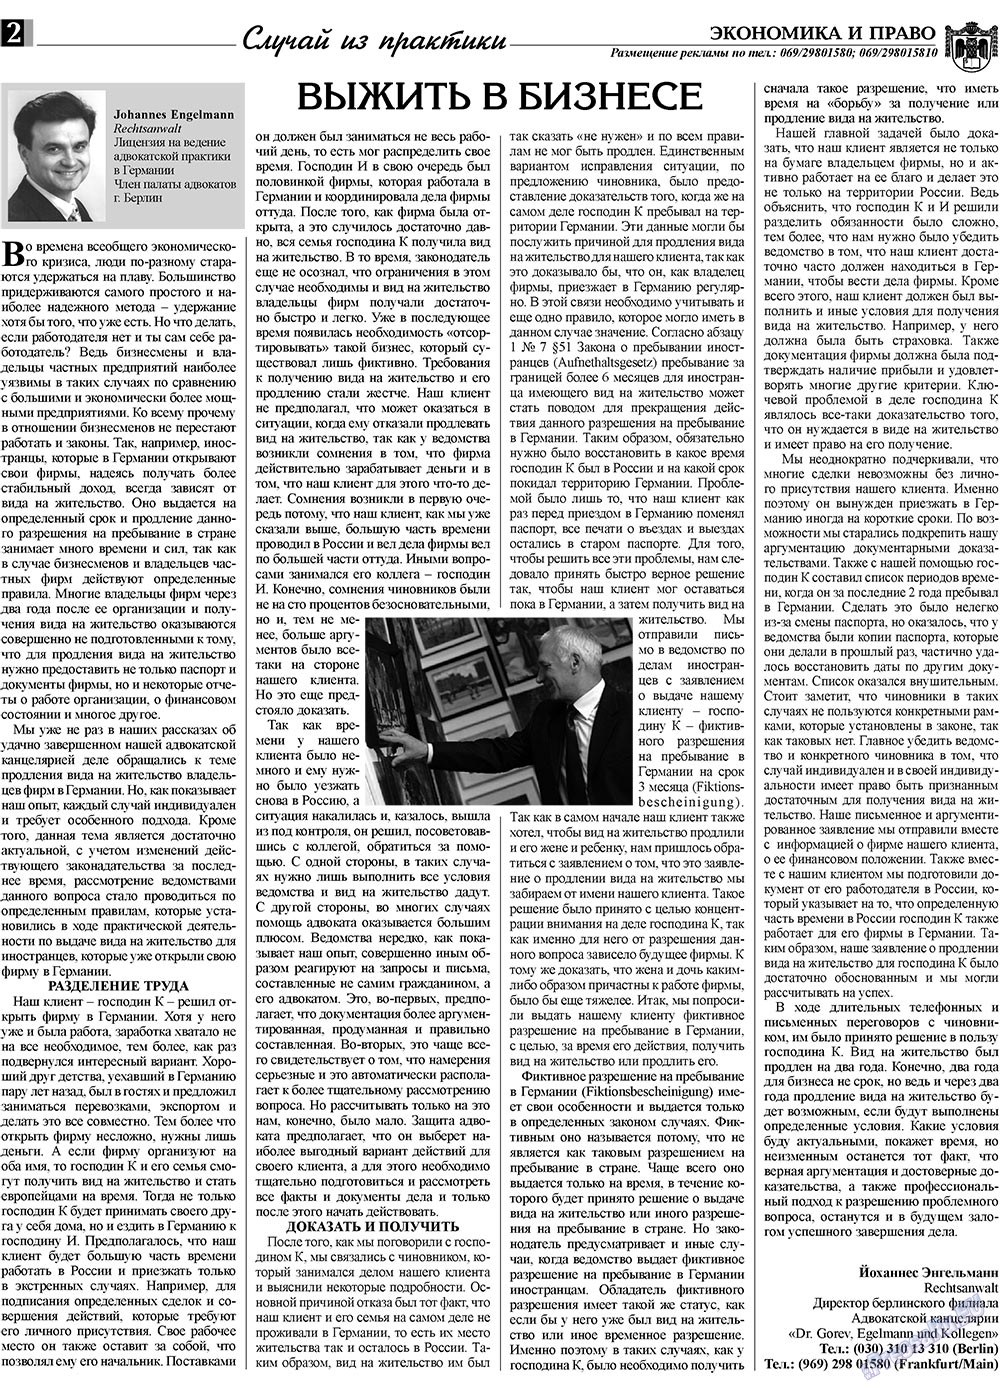 Экономика и право, газета. 2009 №4 стр.2